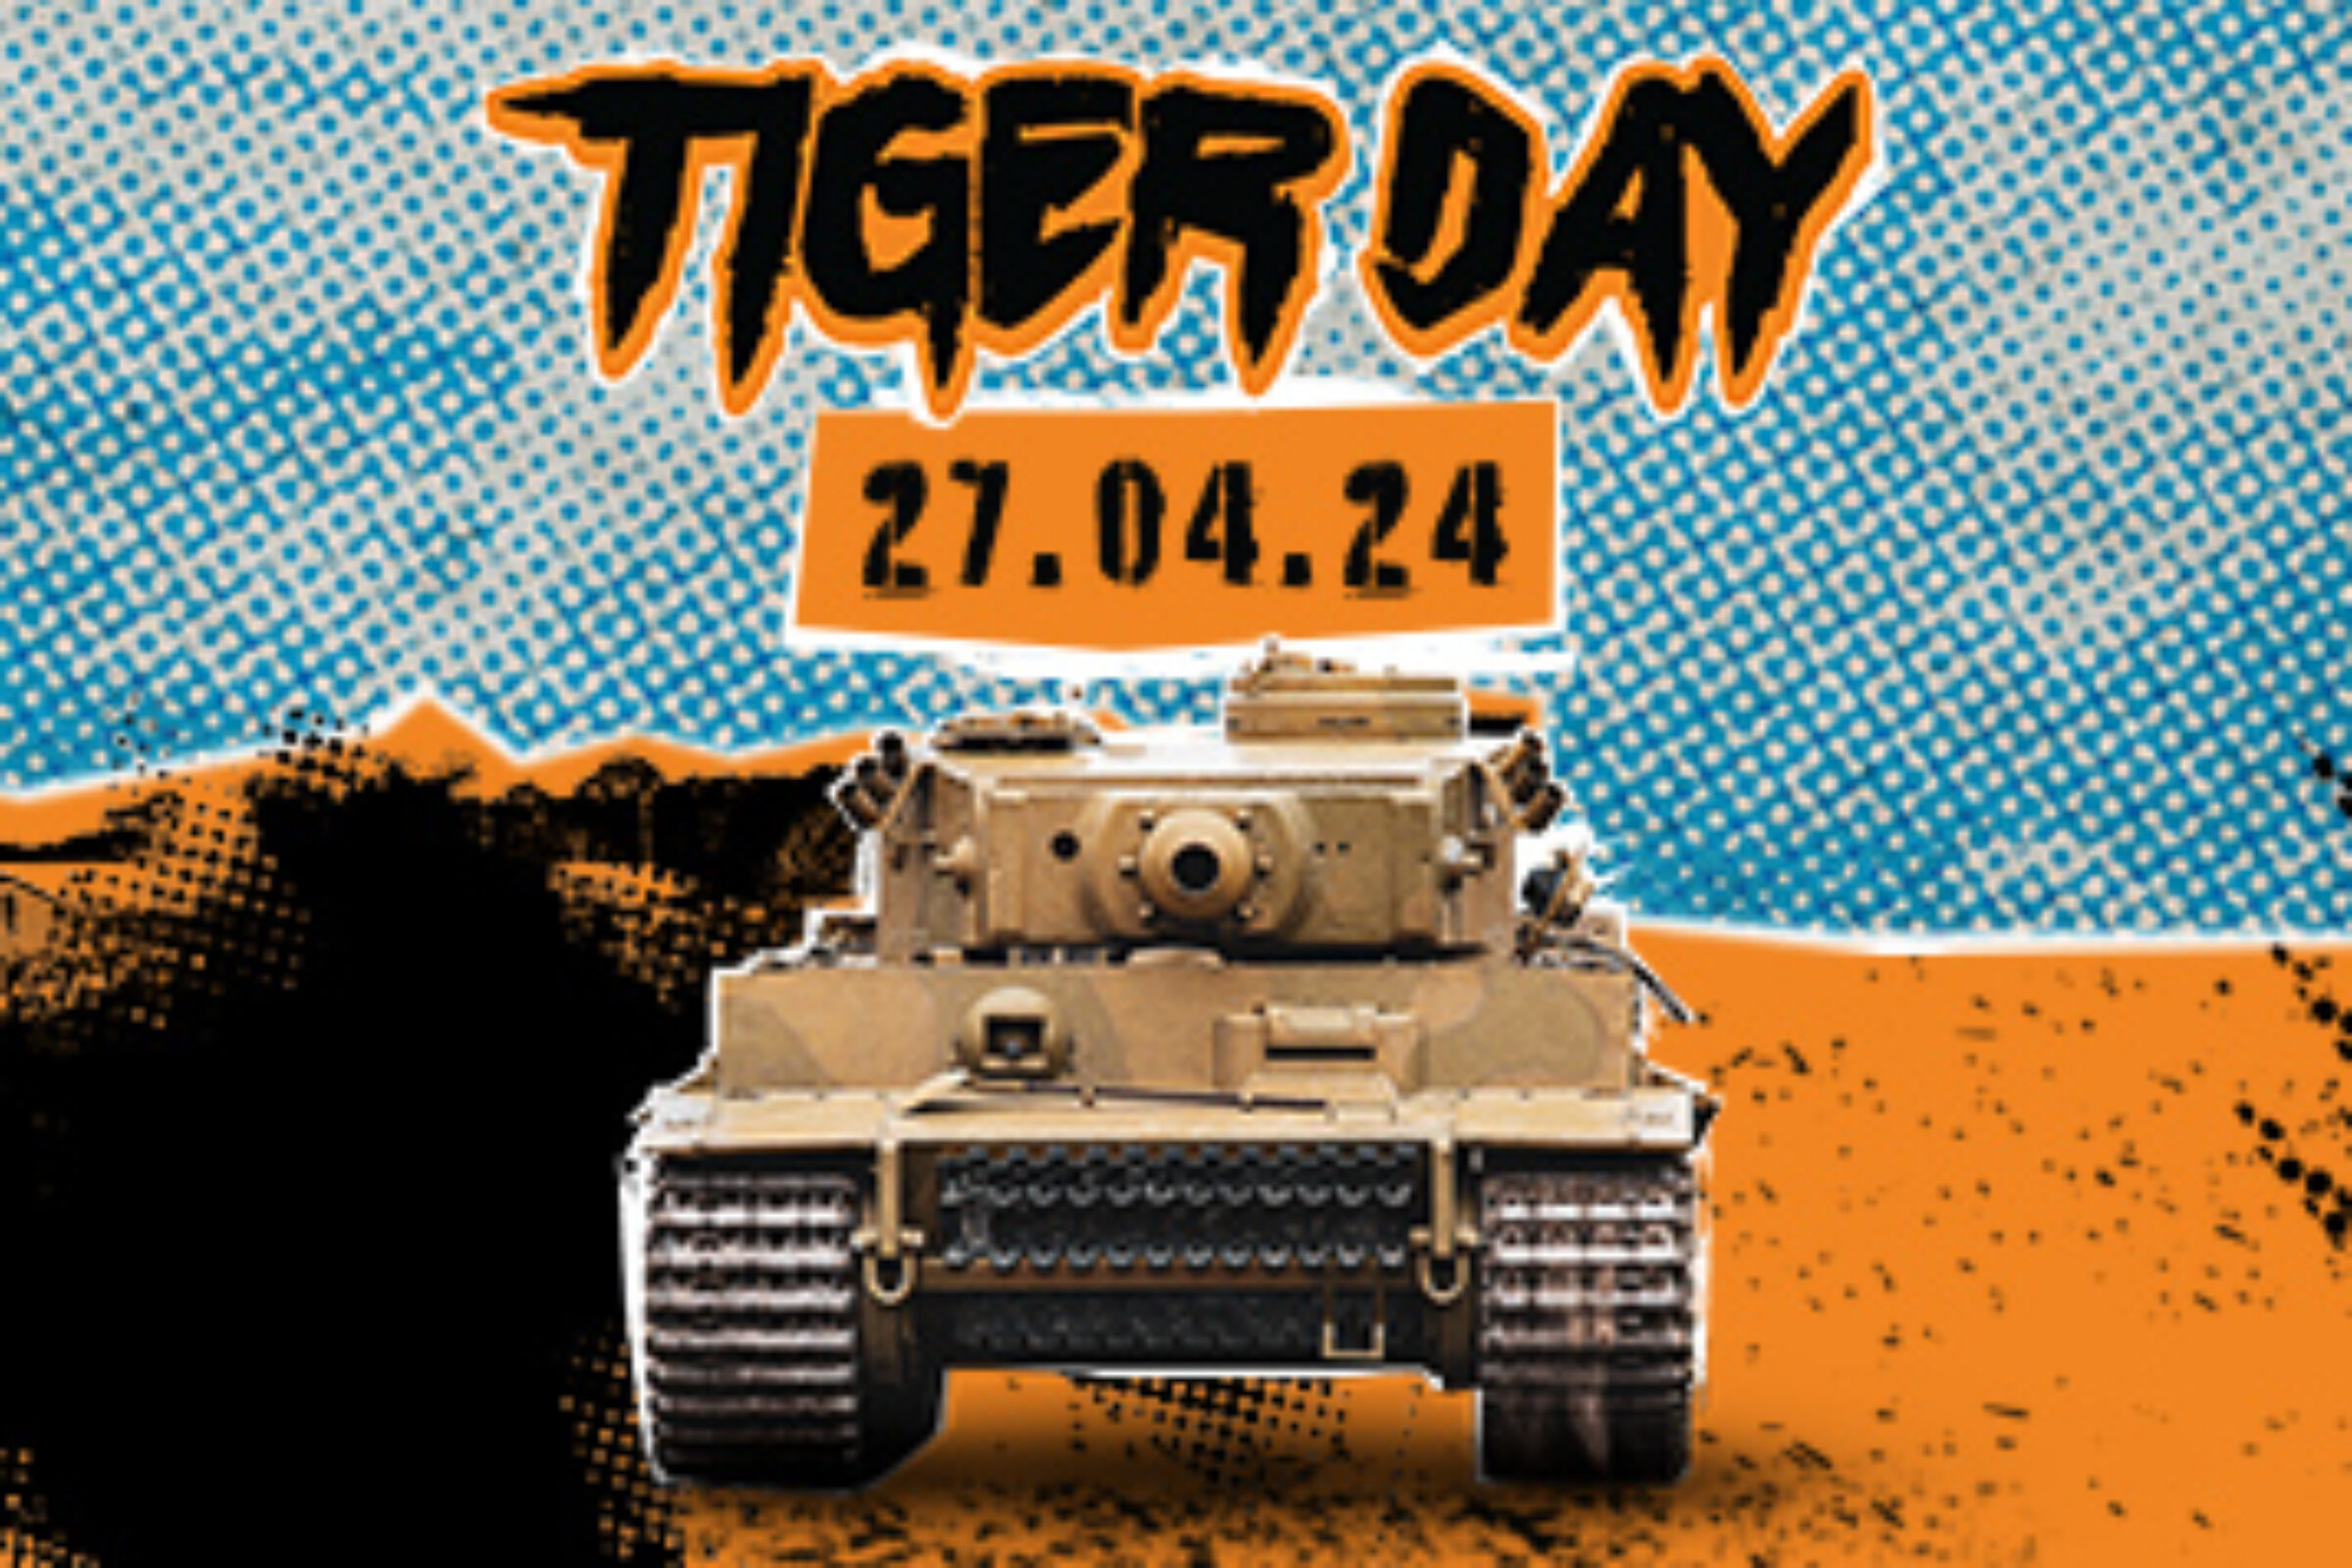 Tiger Day